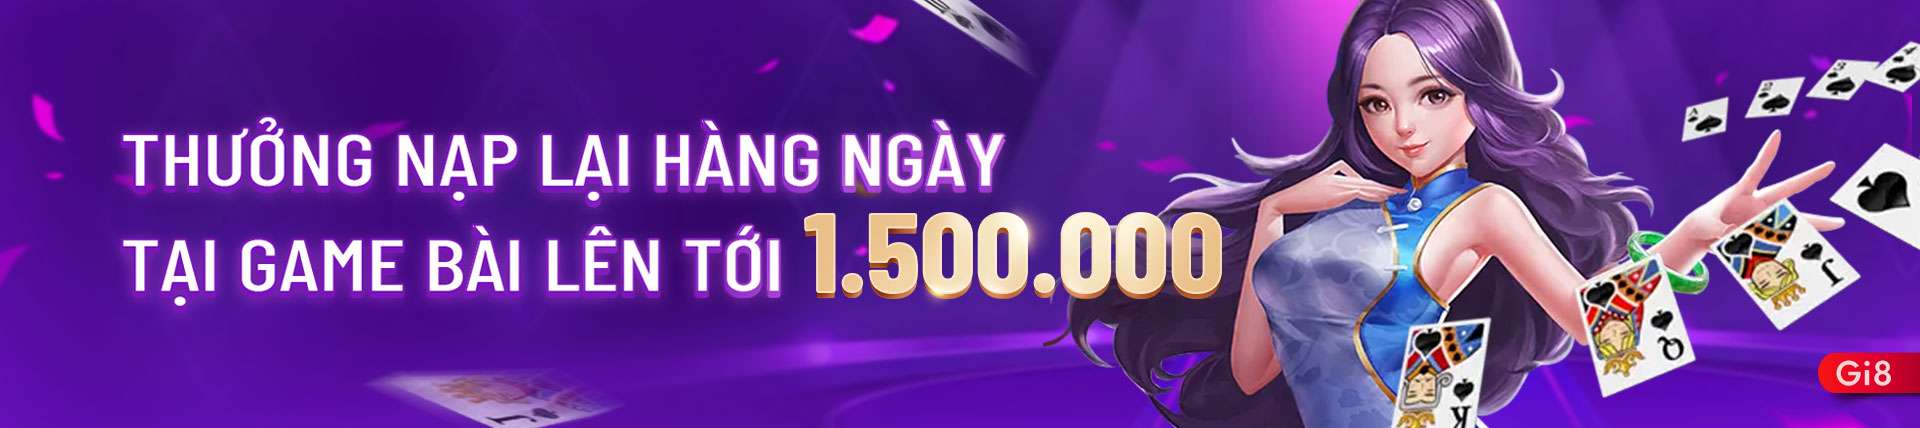 Gi8 - THƯỞNG NẠP LẠI HÀNG NGÀY TẠI GAME BÀI LÊN TỚI 1.500.000